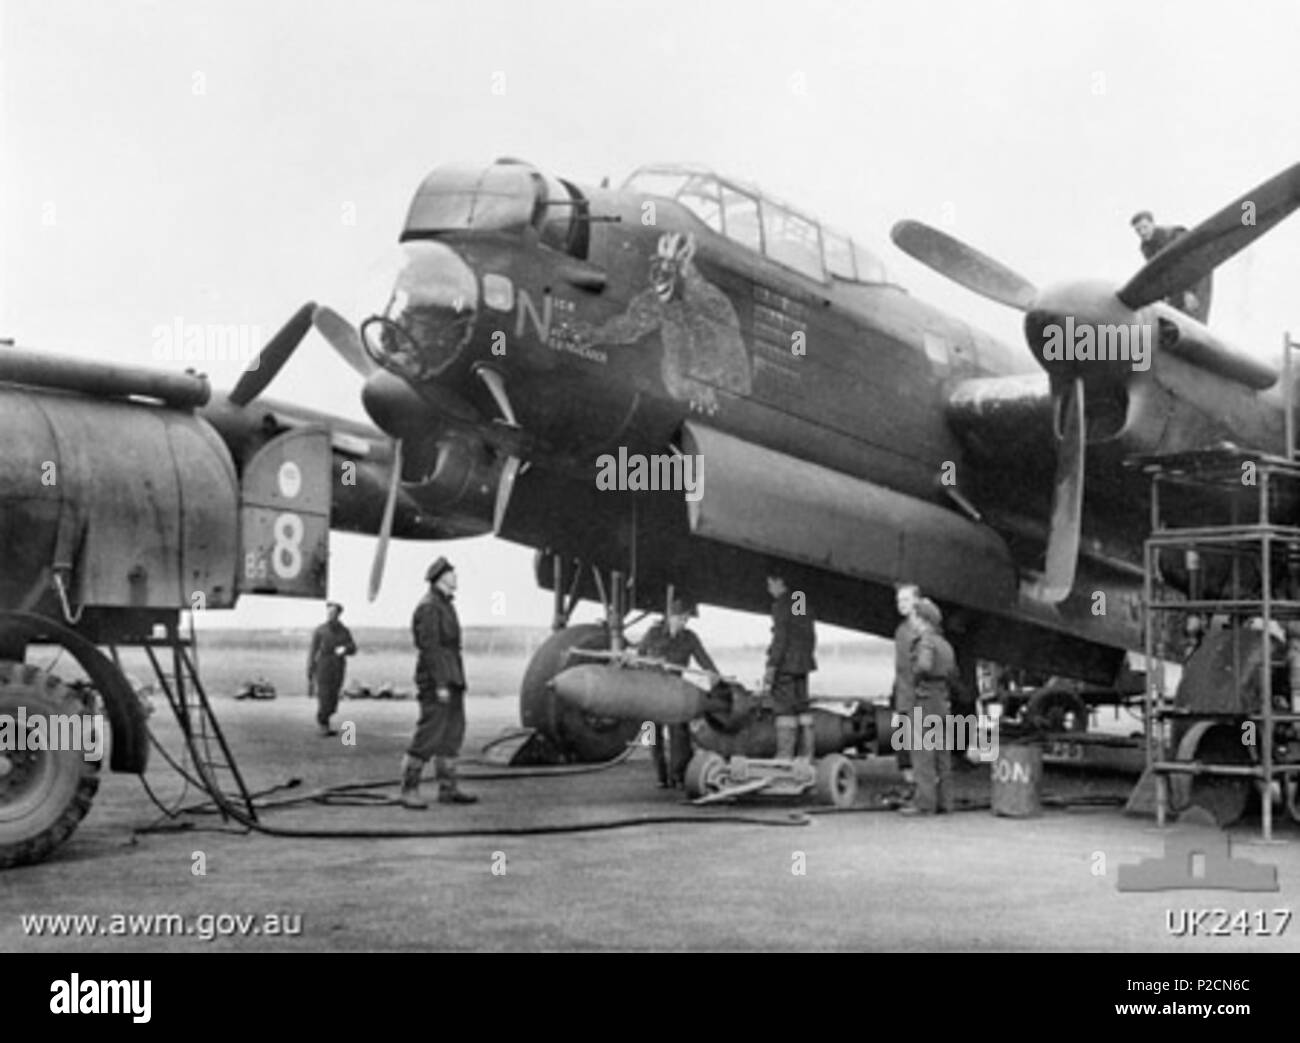 . Englisch: AWM Bildunterschrift: Lincolnshire, England. 1944-12-05. 'Nick' der NS-neutralisator ein Lancaster Flugzeuge von Nr. 463 RAAF Squadron, RAF Station Waddington, der 67 Operationen durchgeführt hat. Zweimal hat das Flugzeug wieder sicher nach mit der Hälfte der Leitwerk entfernt. Vom 5. Dezember 1944. Nicht angegeben 5 Avro Lancaster - Waddington - 463 Sqn RAAF (UK 2417) Stockfoto